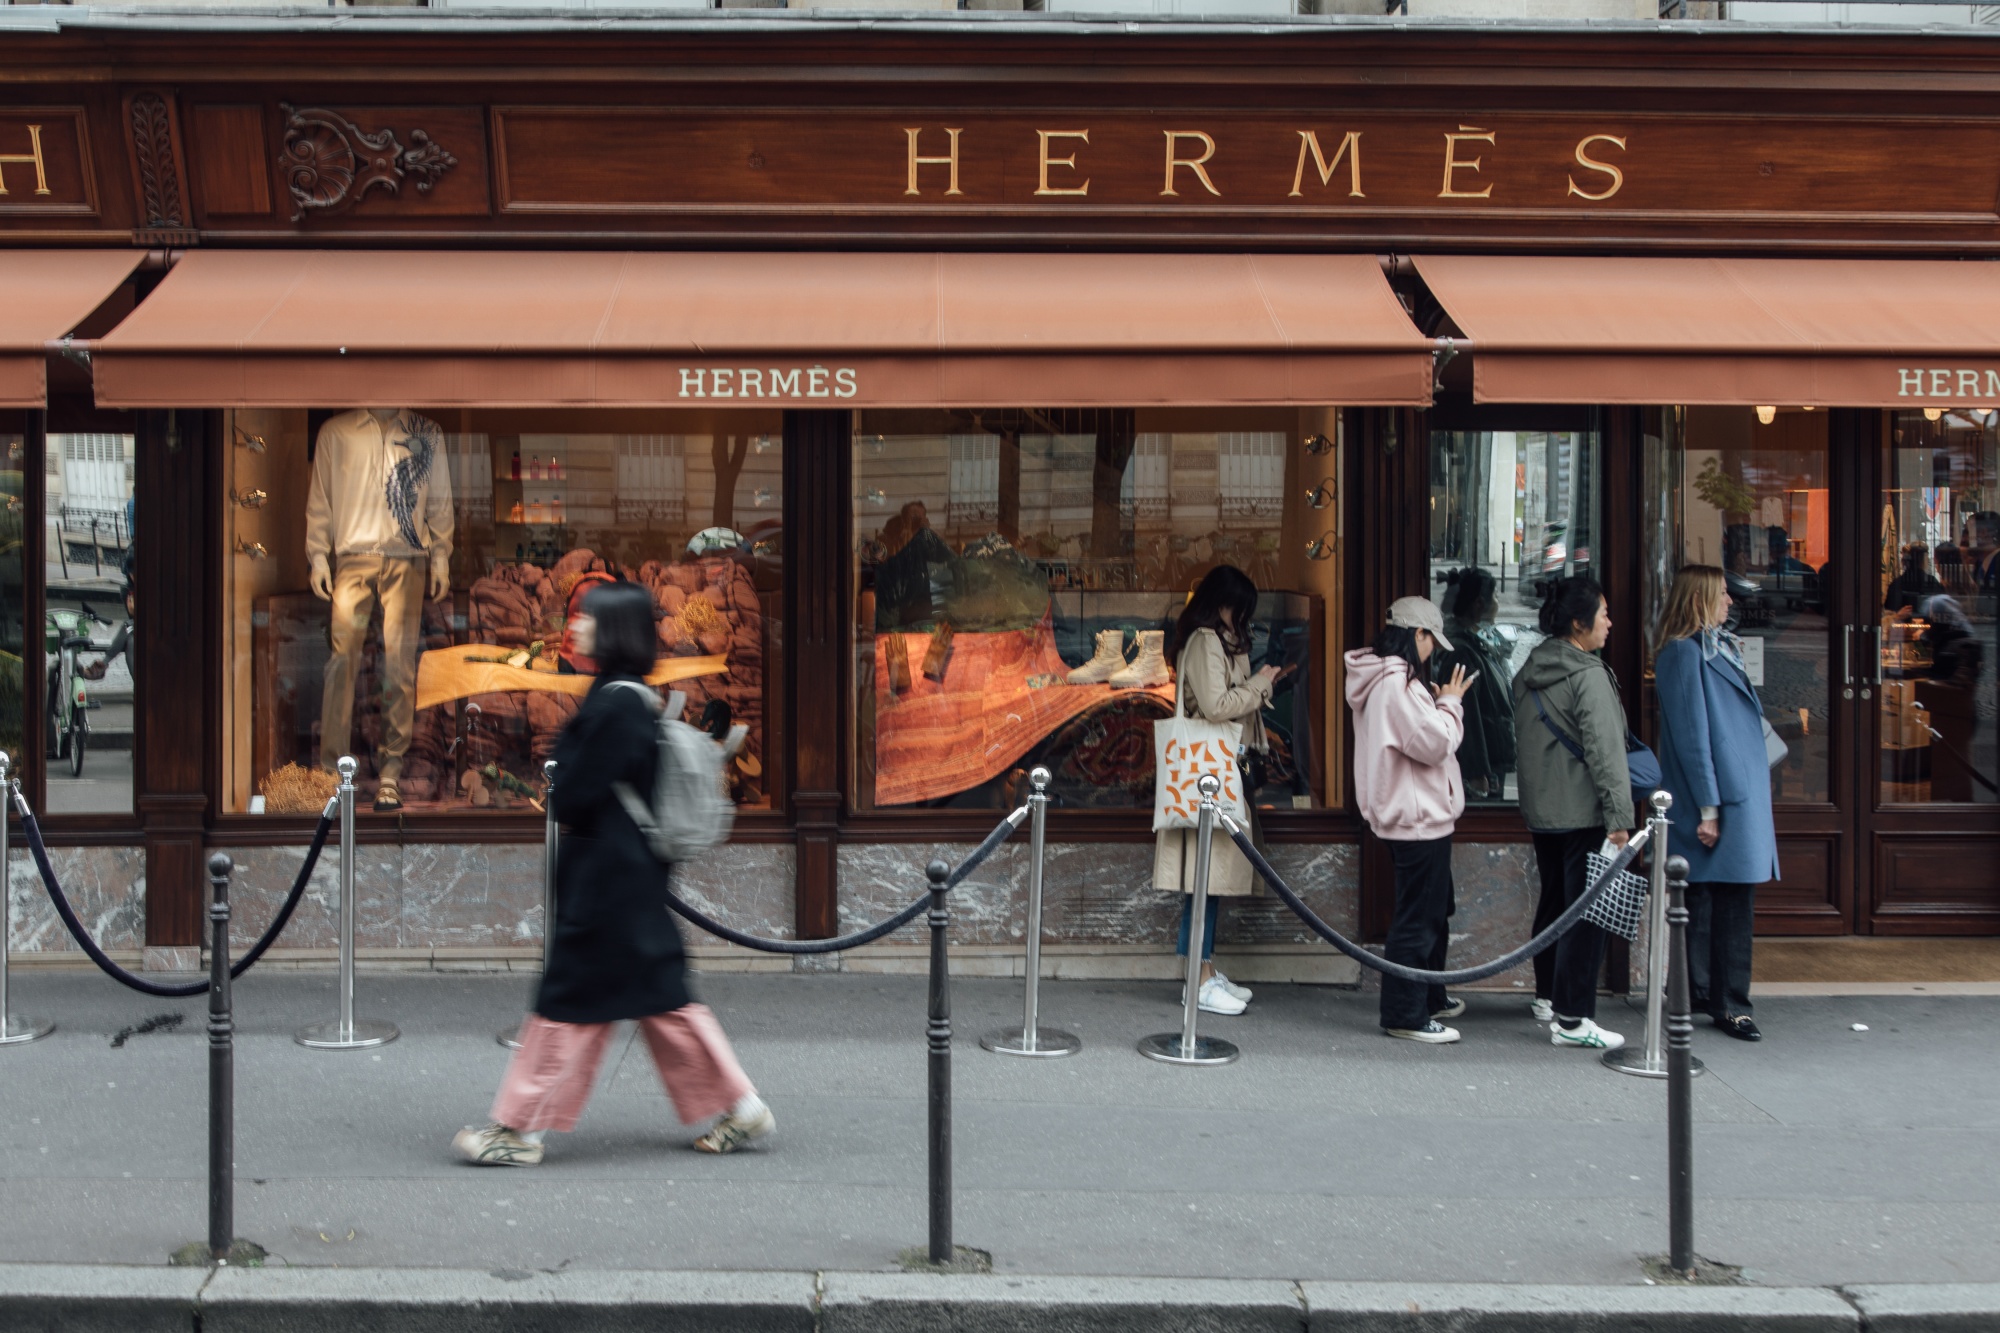 Hermes Sales Rise as US, Europe Shoppers Splurge on Birkins - Bloomberg